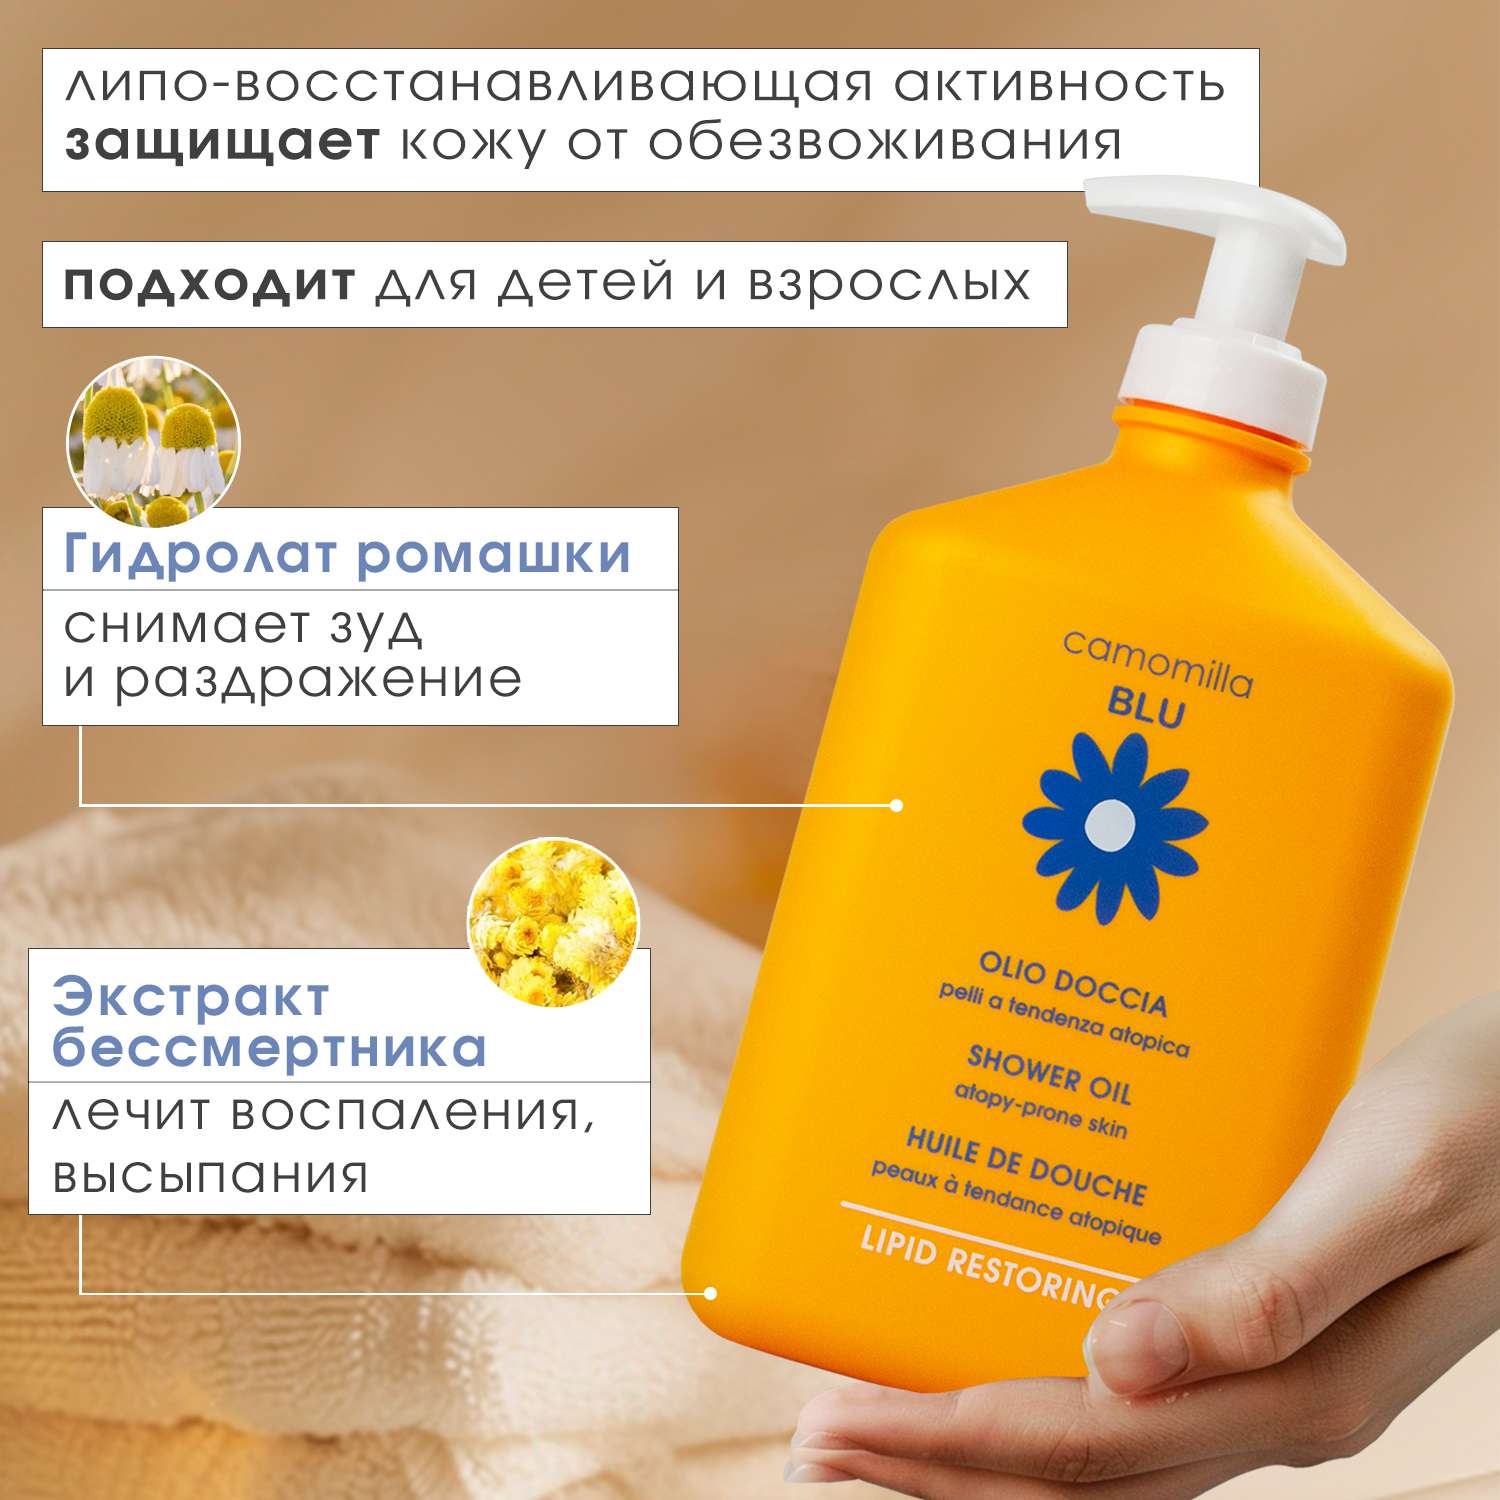 Масло для душа Camomilla BLU для сверхчувствительной атопичной кожи Shower oil atopy-prone skin 500 мл - фото 2